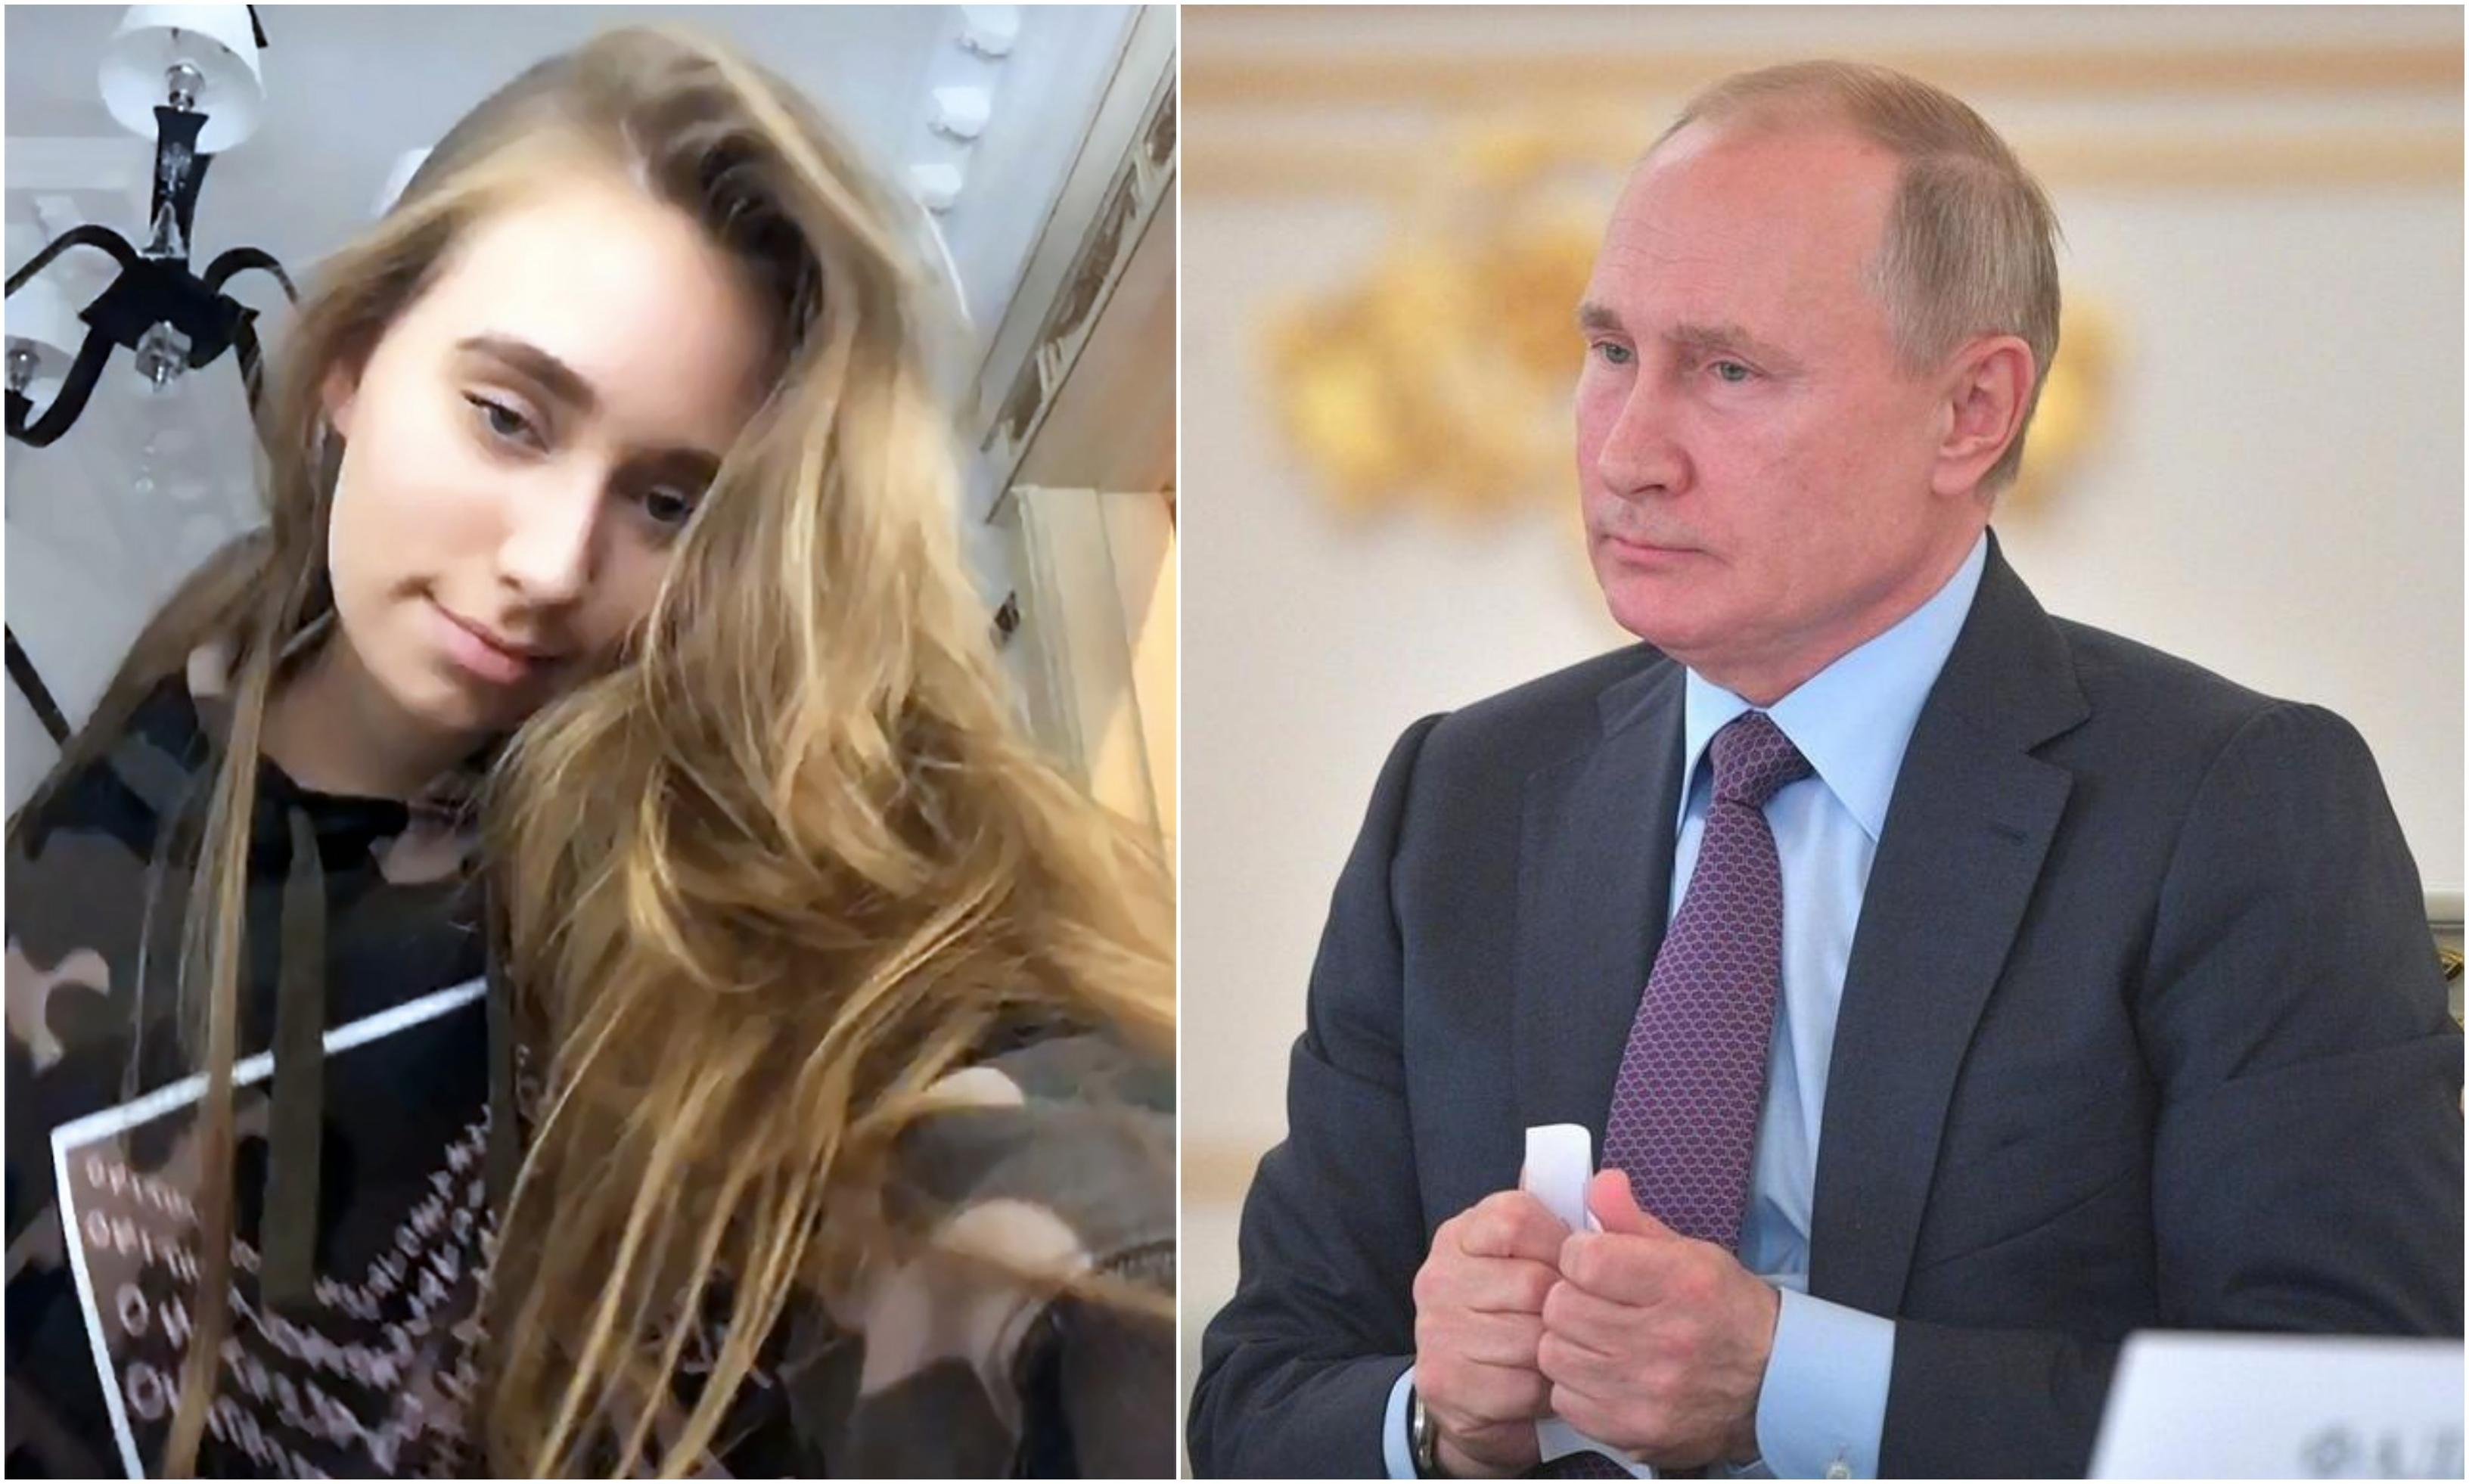 Acasă la fiica „secretă” a lui Vladimir Putin. Cum arată interiorul apartamentului placat cu aur